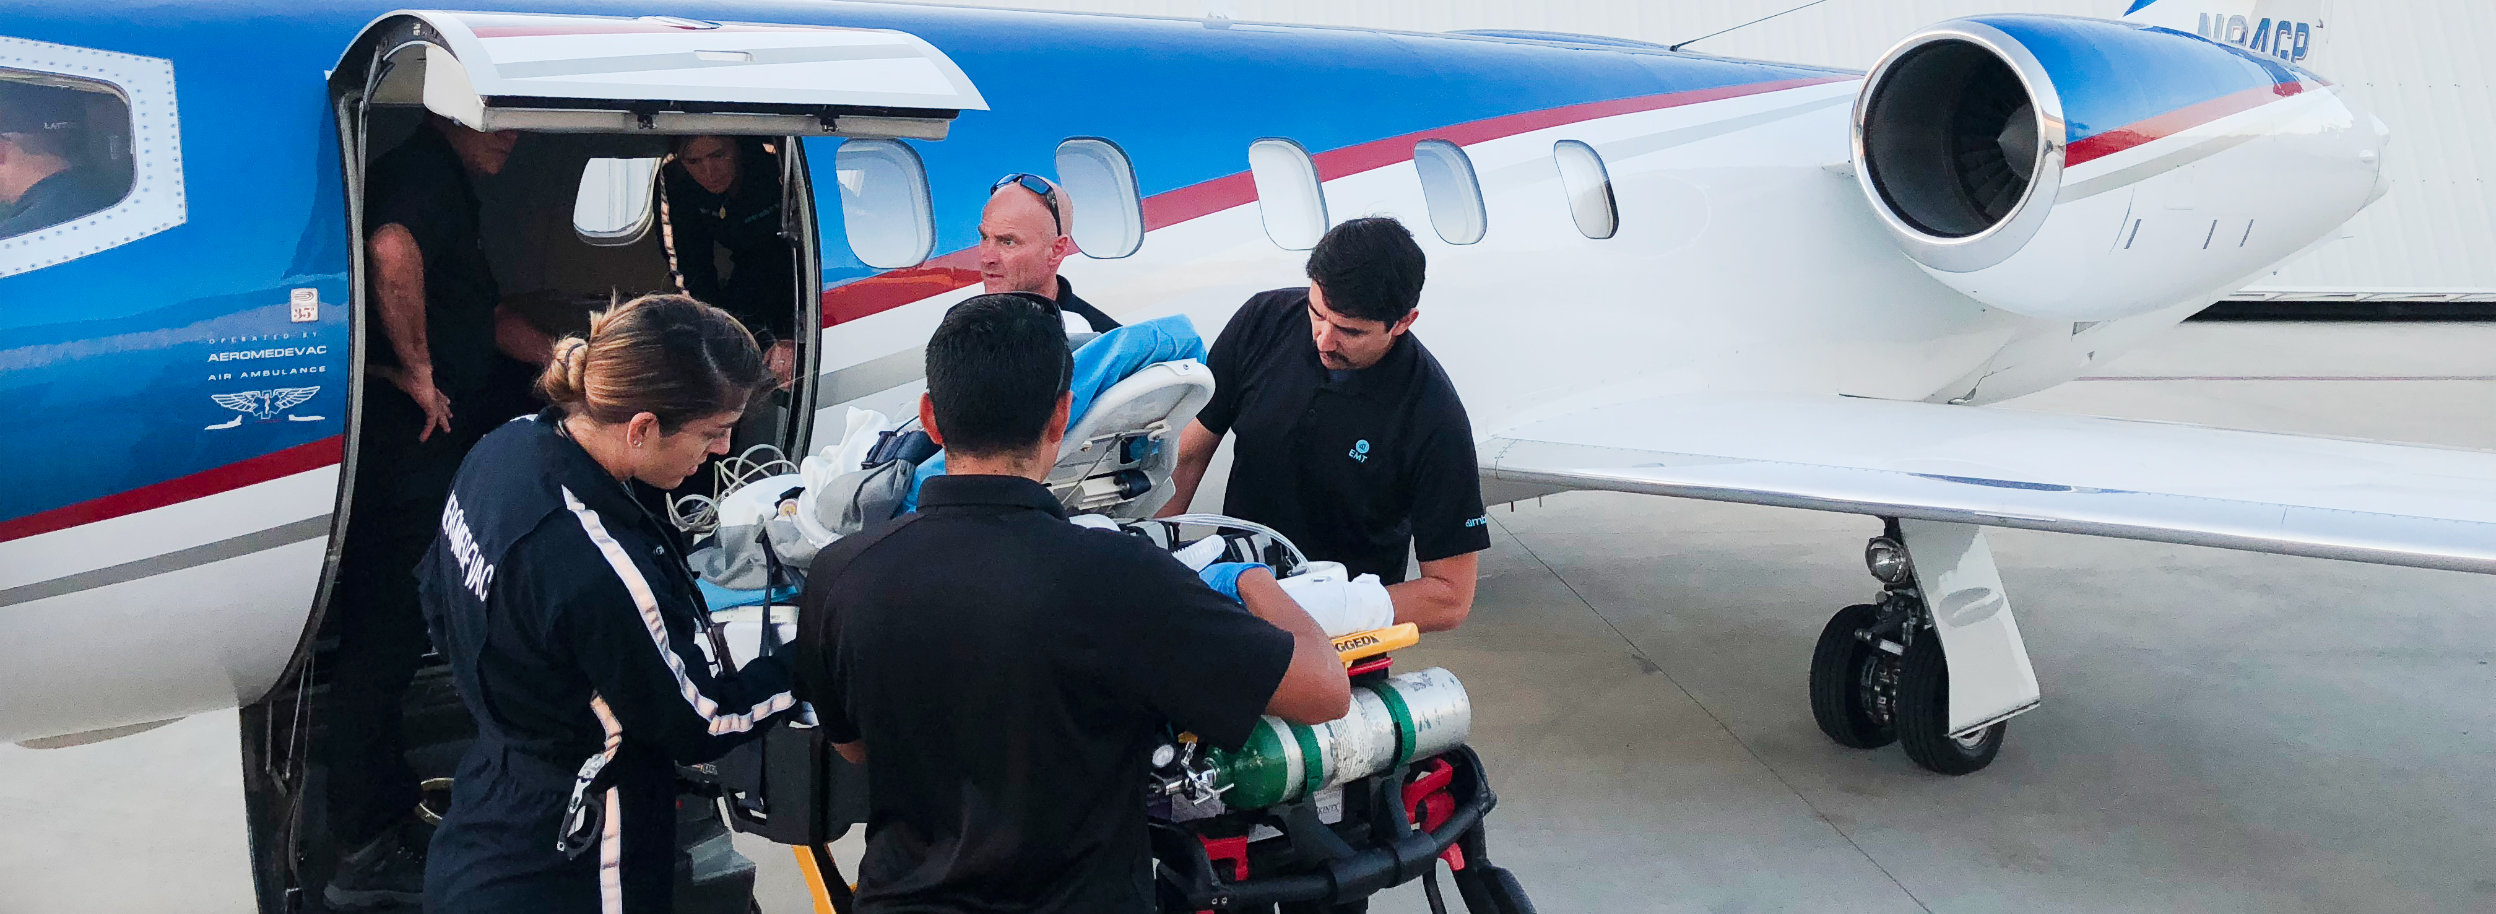 El equipo de Aeromedevac prepara a un paciente para un vuelo sanitario